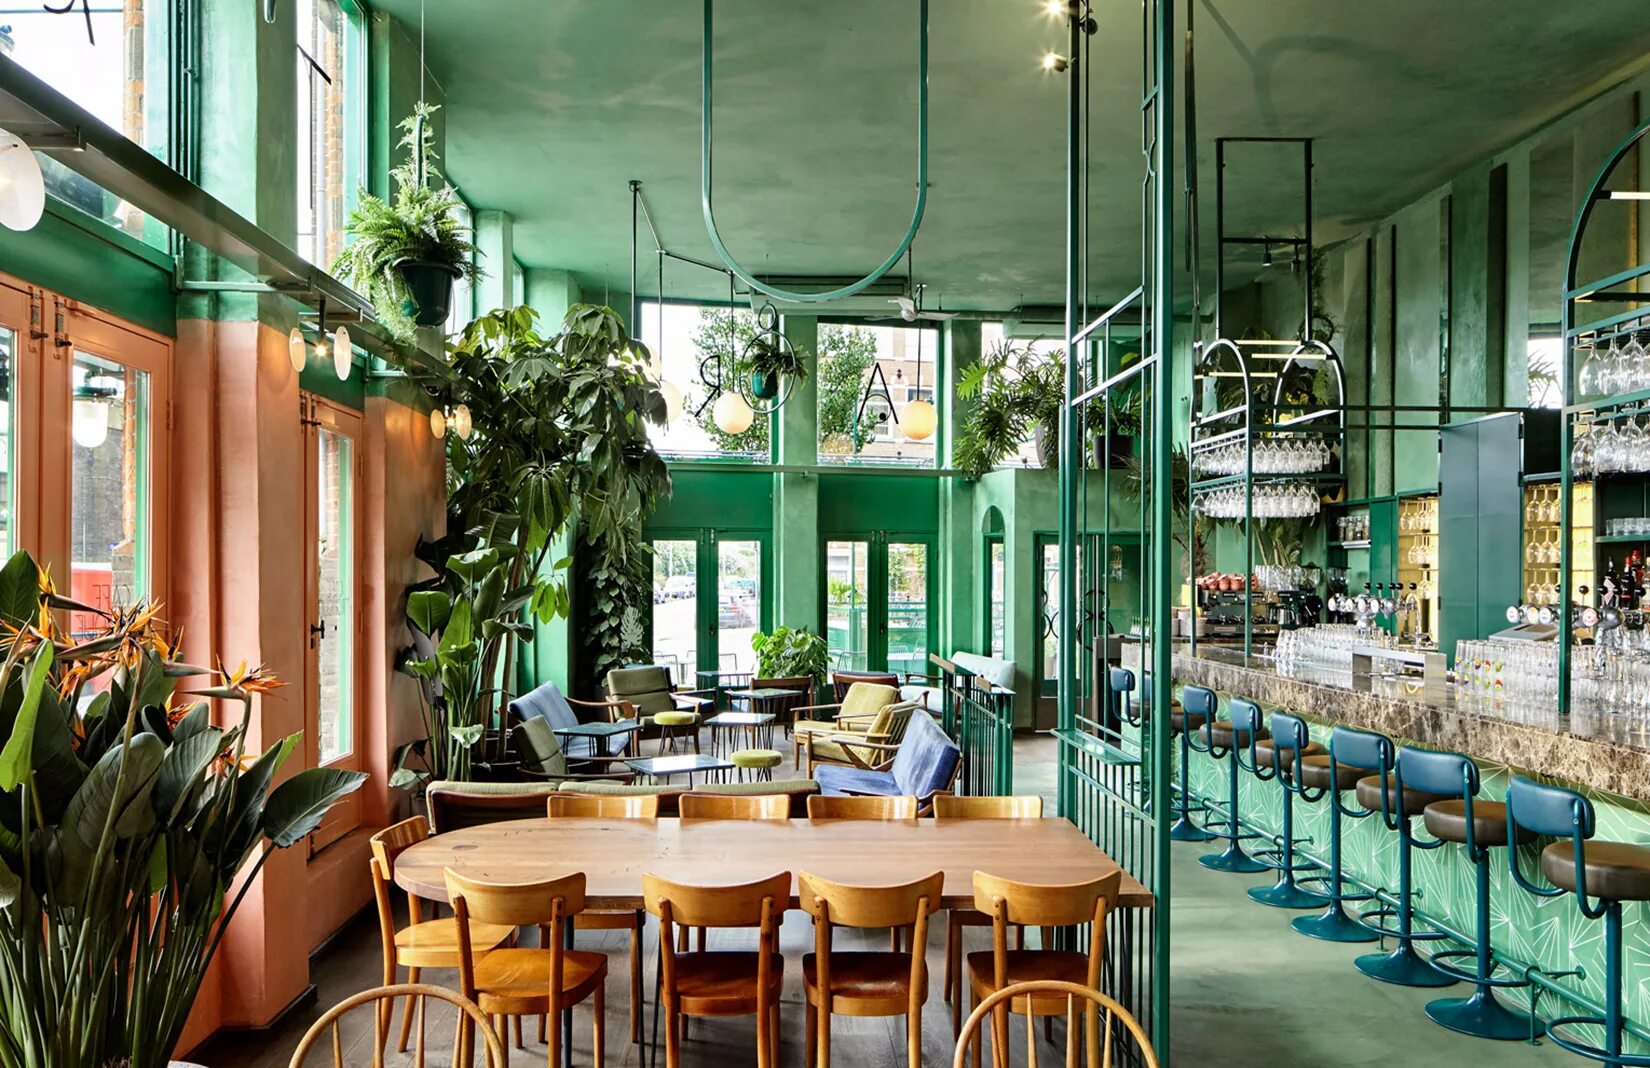 Ресторан Грин Вуд. Кафе с зеленым интерьером. Кафе с растениями. Растения в интерьере ресторана. Кафе green